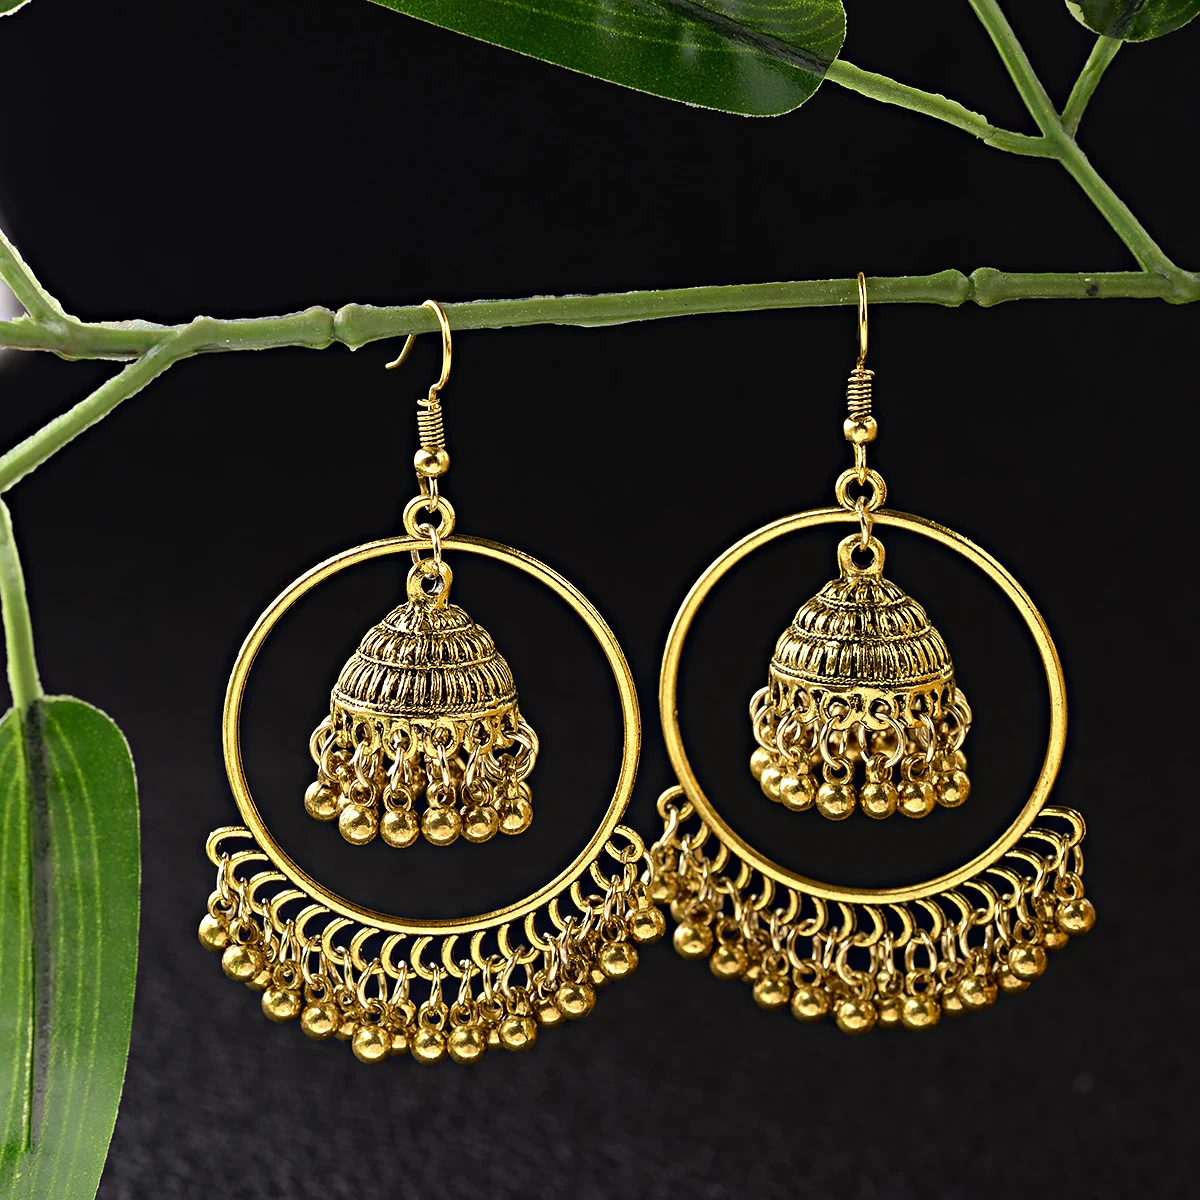 

Gold Indian Jewelry Jhumka Jhumki Drop Earrings Gypsy Tassel Hook Earrings For Women Fashion Jewelry, Gold/silver